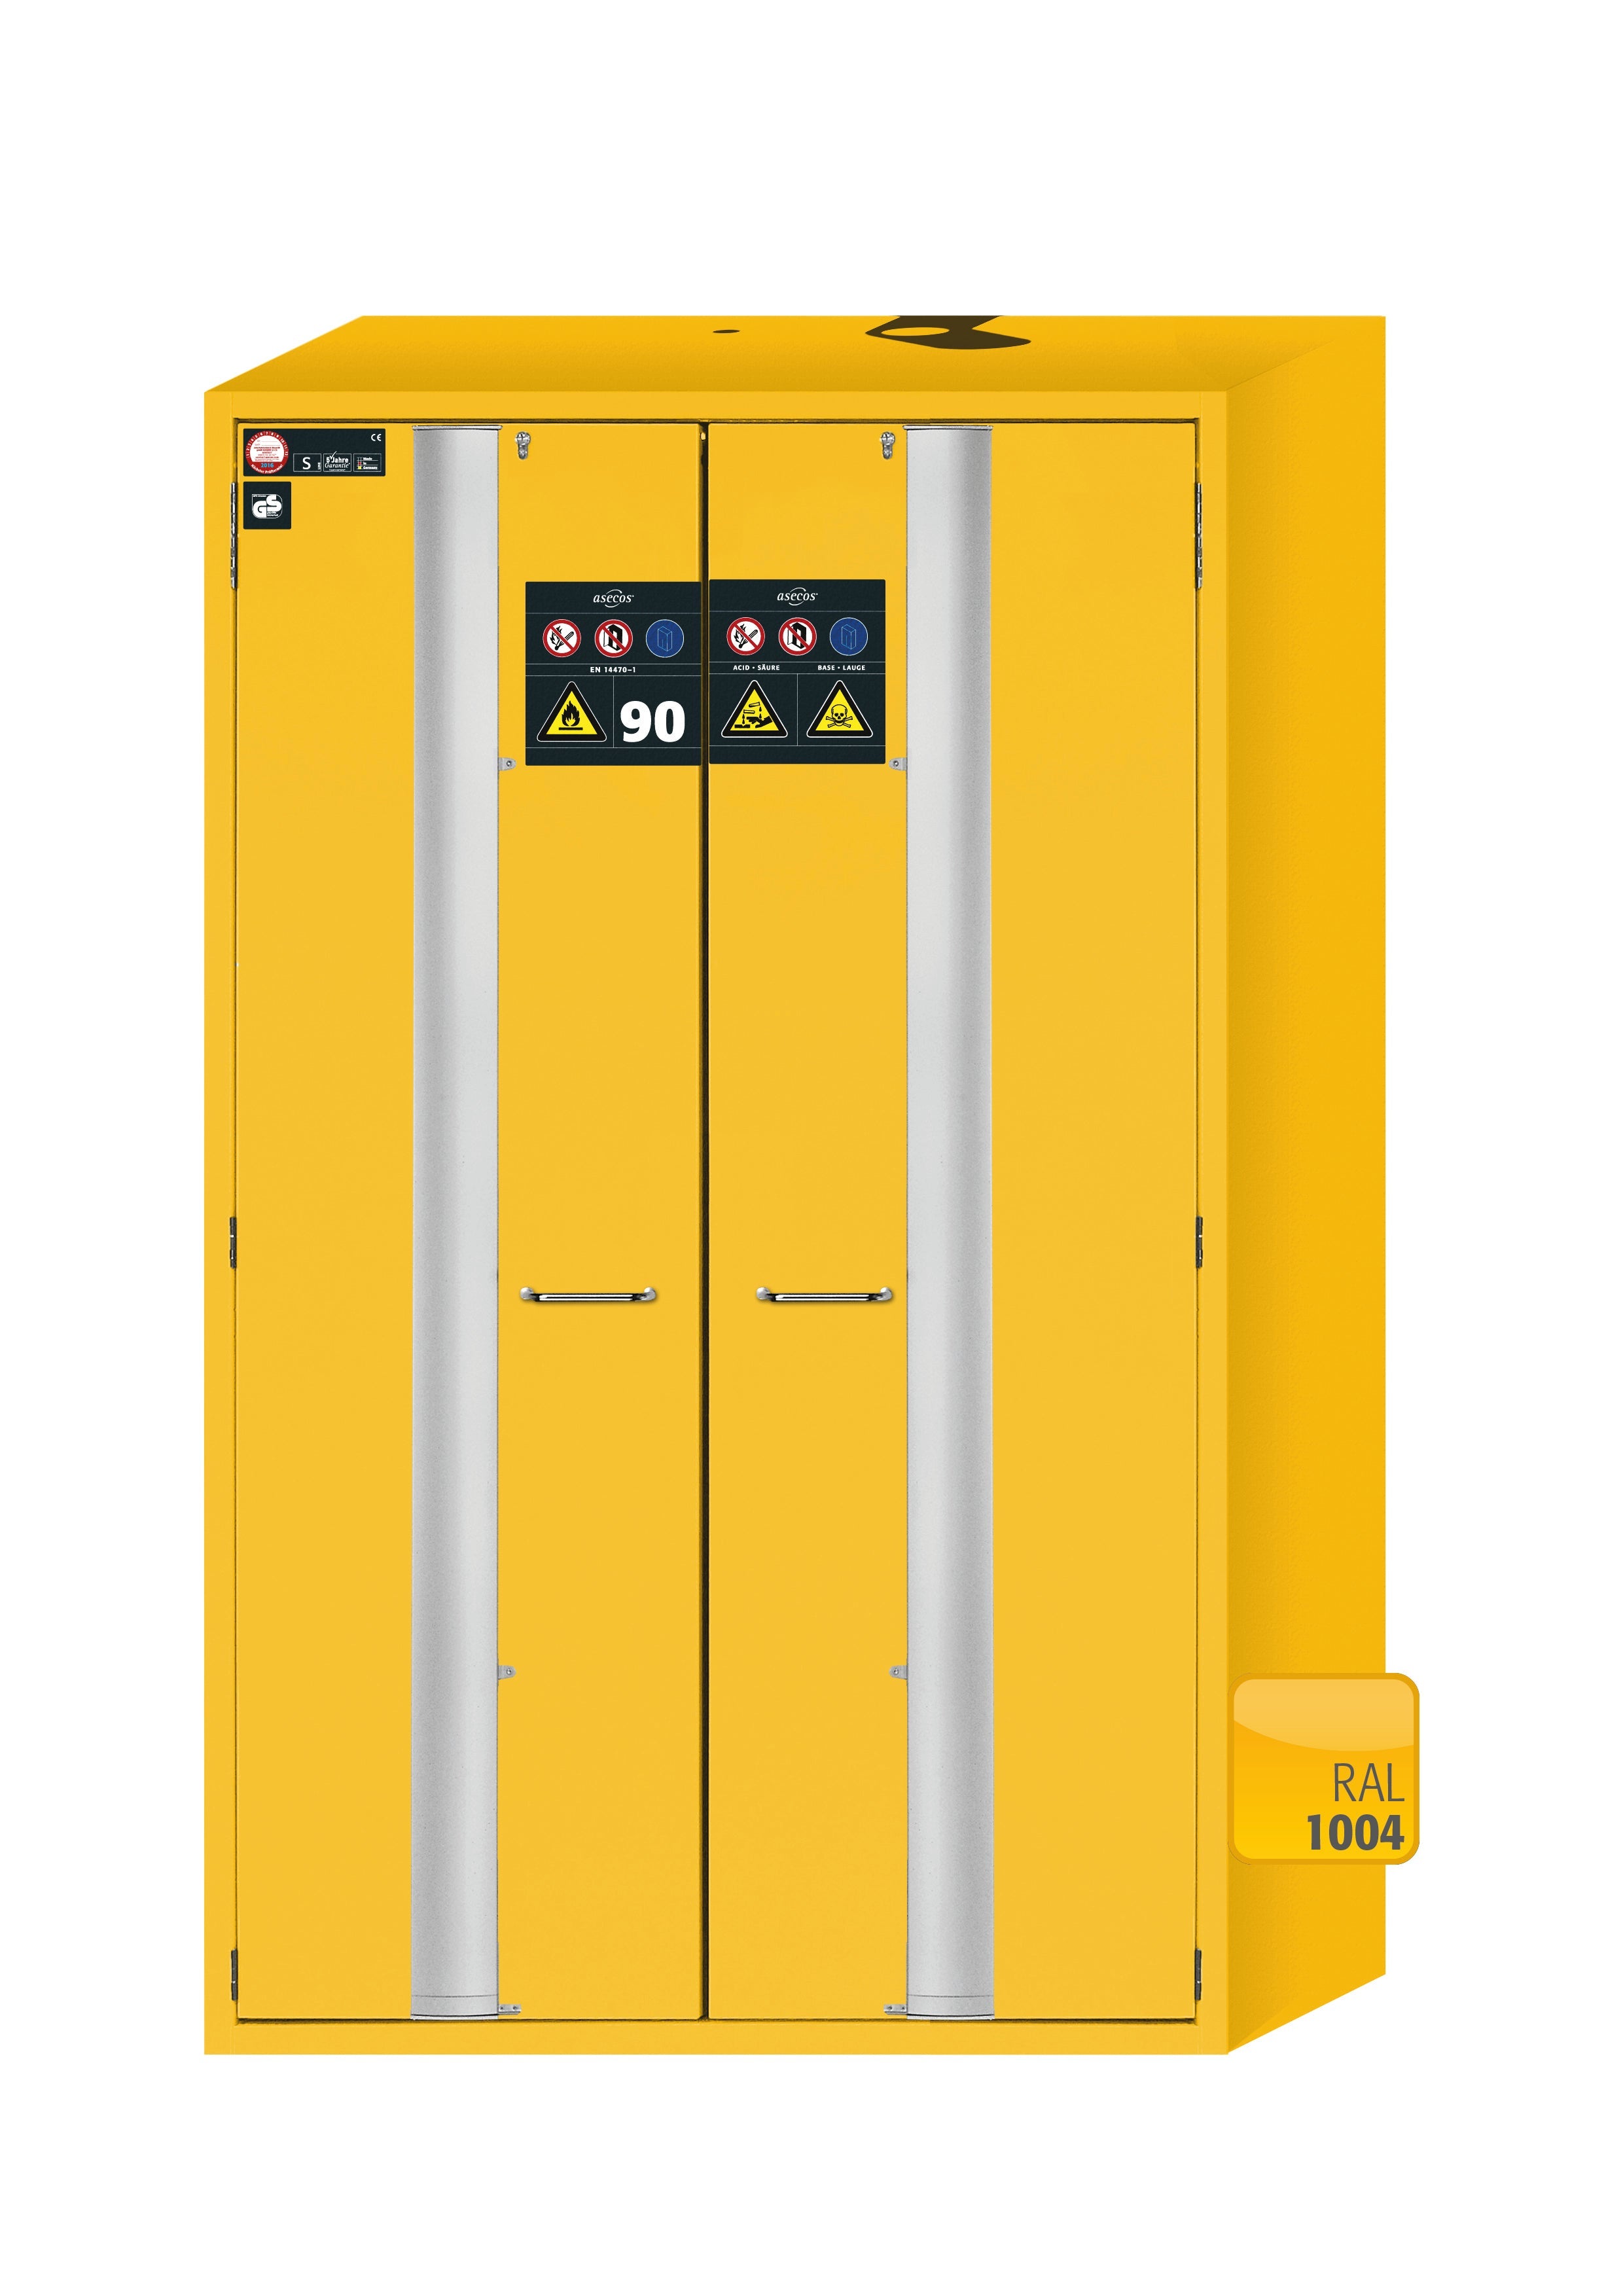 Armoire de sécurité type 90 S-PHOENIX-90 modèle S90.196.120.MV.FDAS en jaune de sécurité RAL 1004 avec 6 étagères standard (acier inoxydable 1.4301)